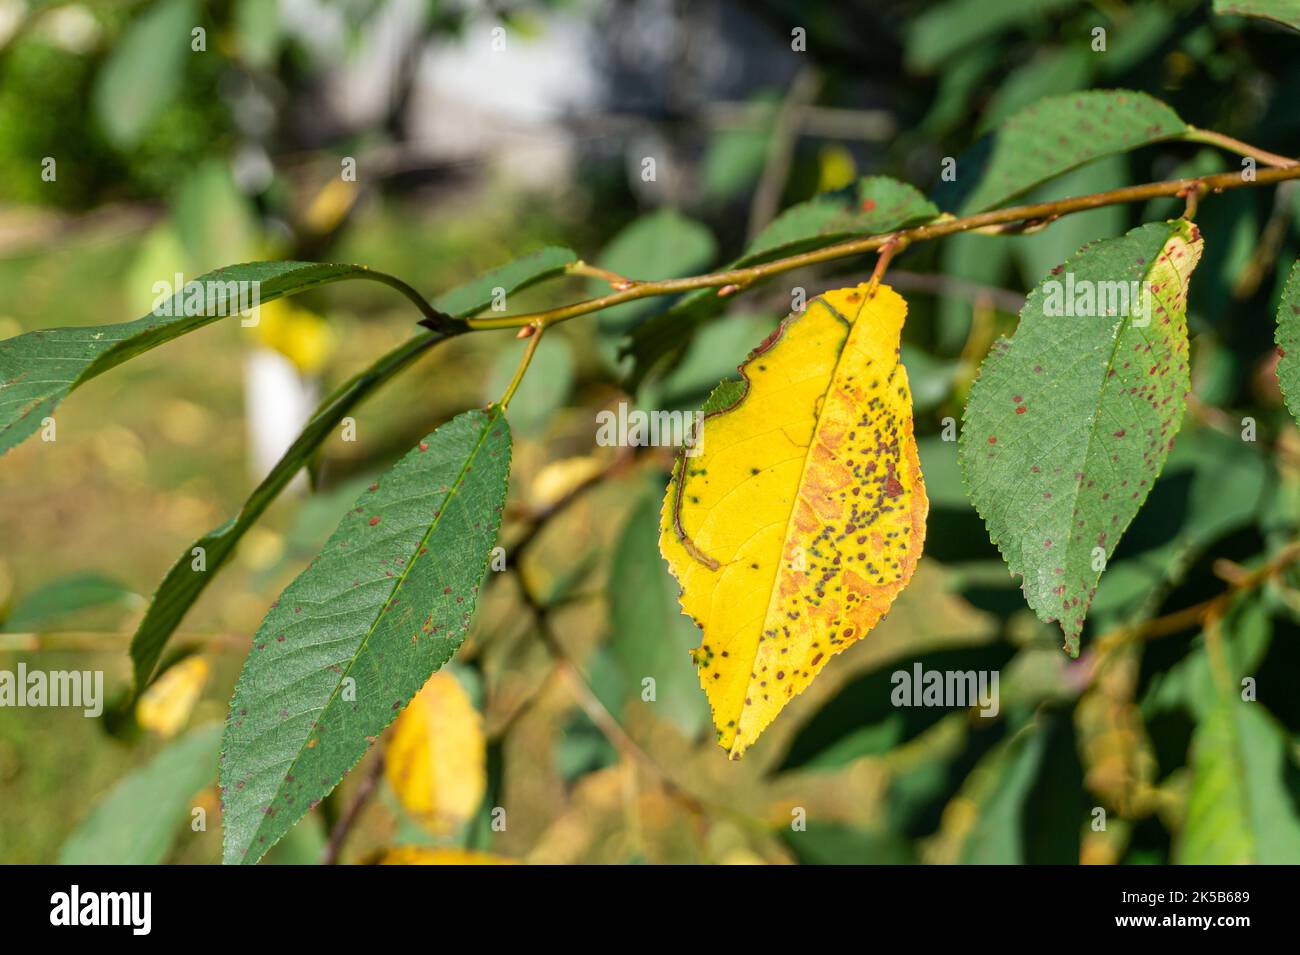 Kirschblattfleck durch Blumeriella jaapii-Pilz verursacht. Gelbblättriges Blattläuschen Kokkosen von Kirsch- und Pflaumenbäumen. Braune Flecken auf den Blättern. Stockfoto